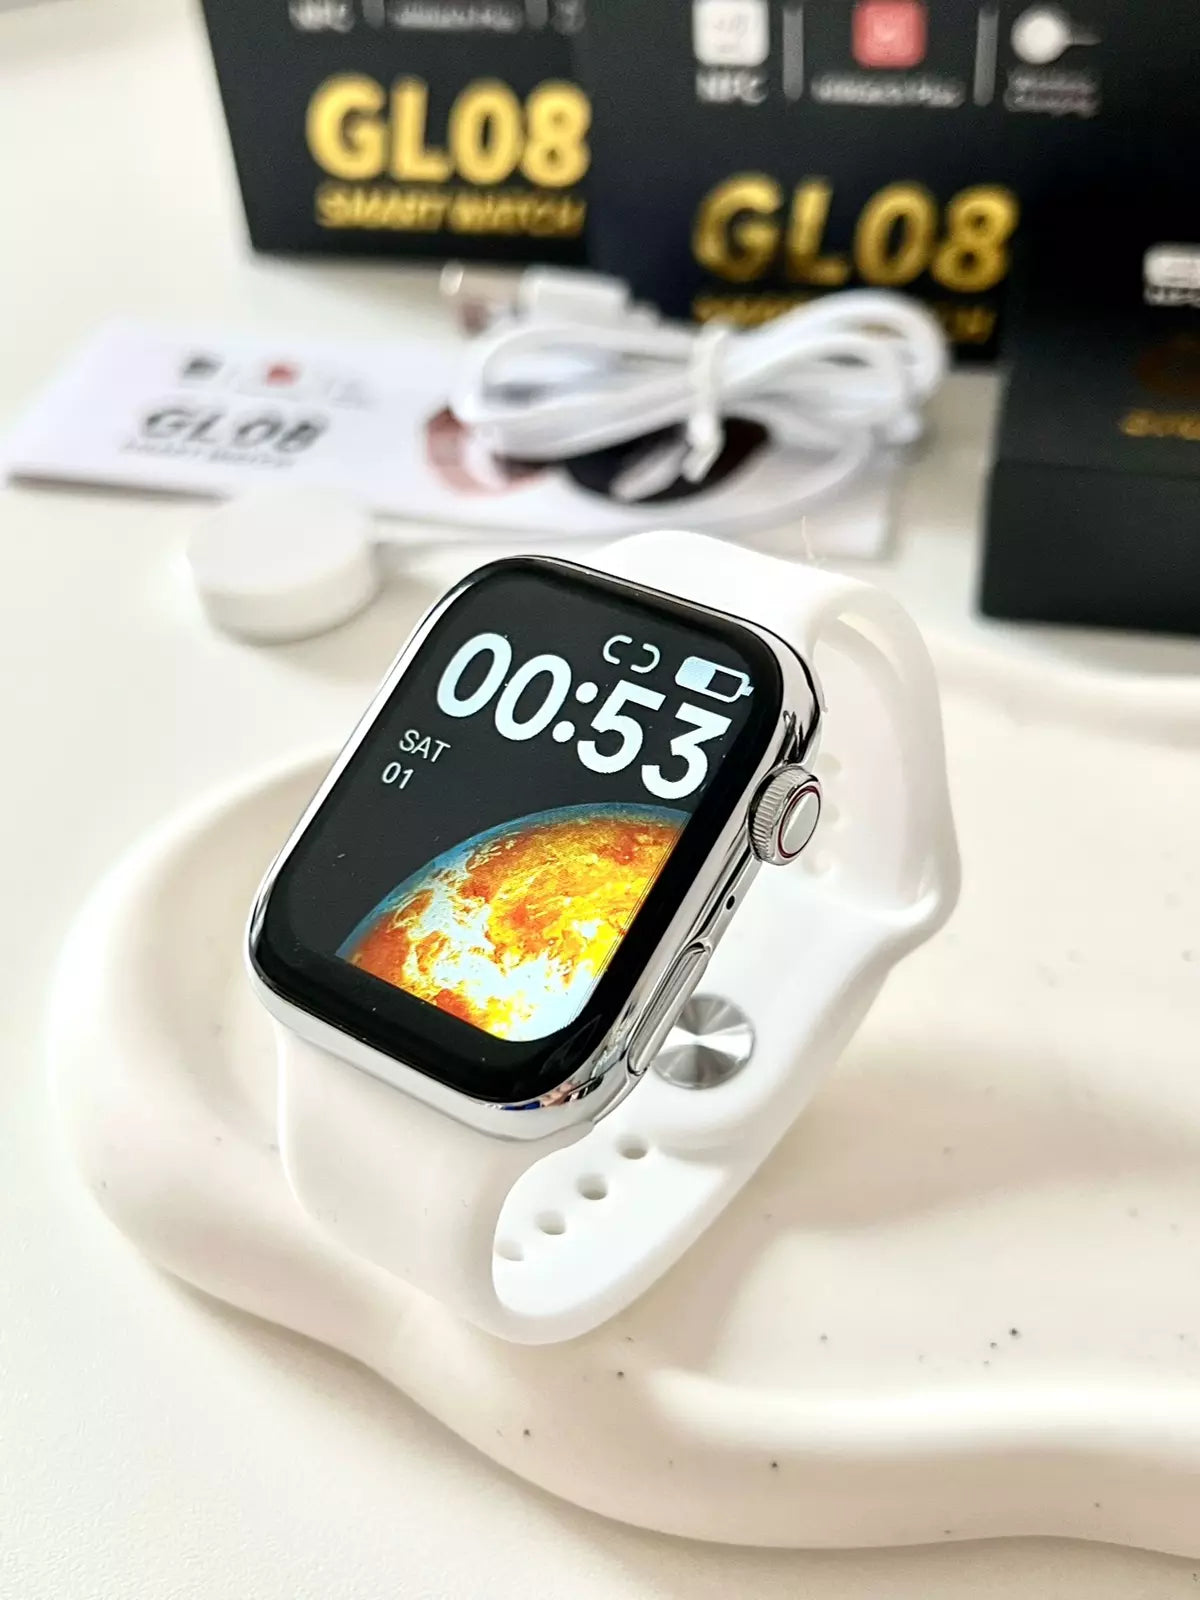 Smart Watch GL08 Serie 8